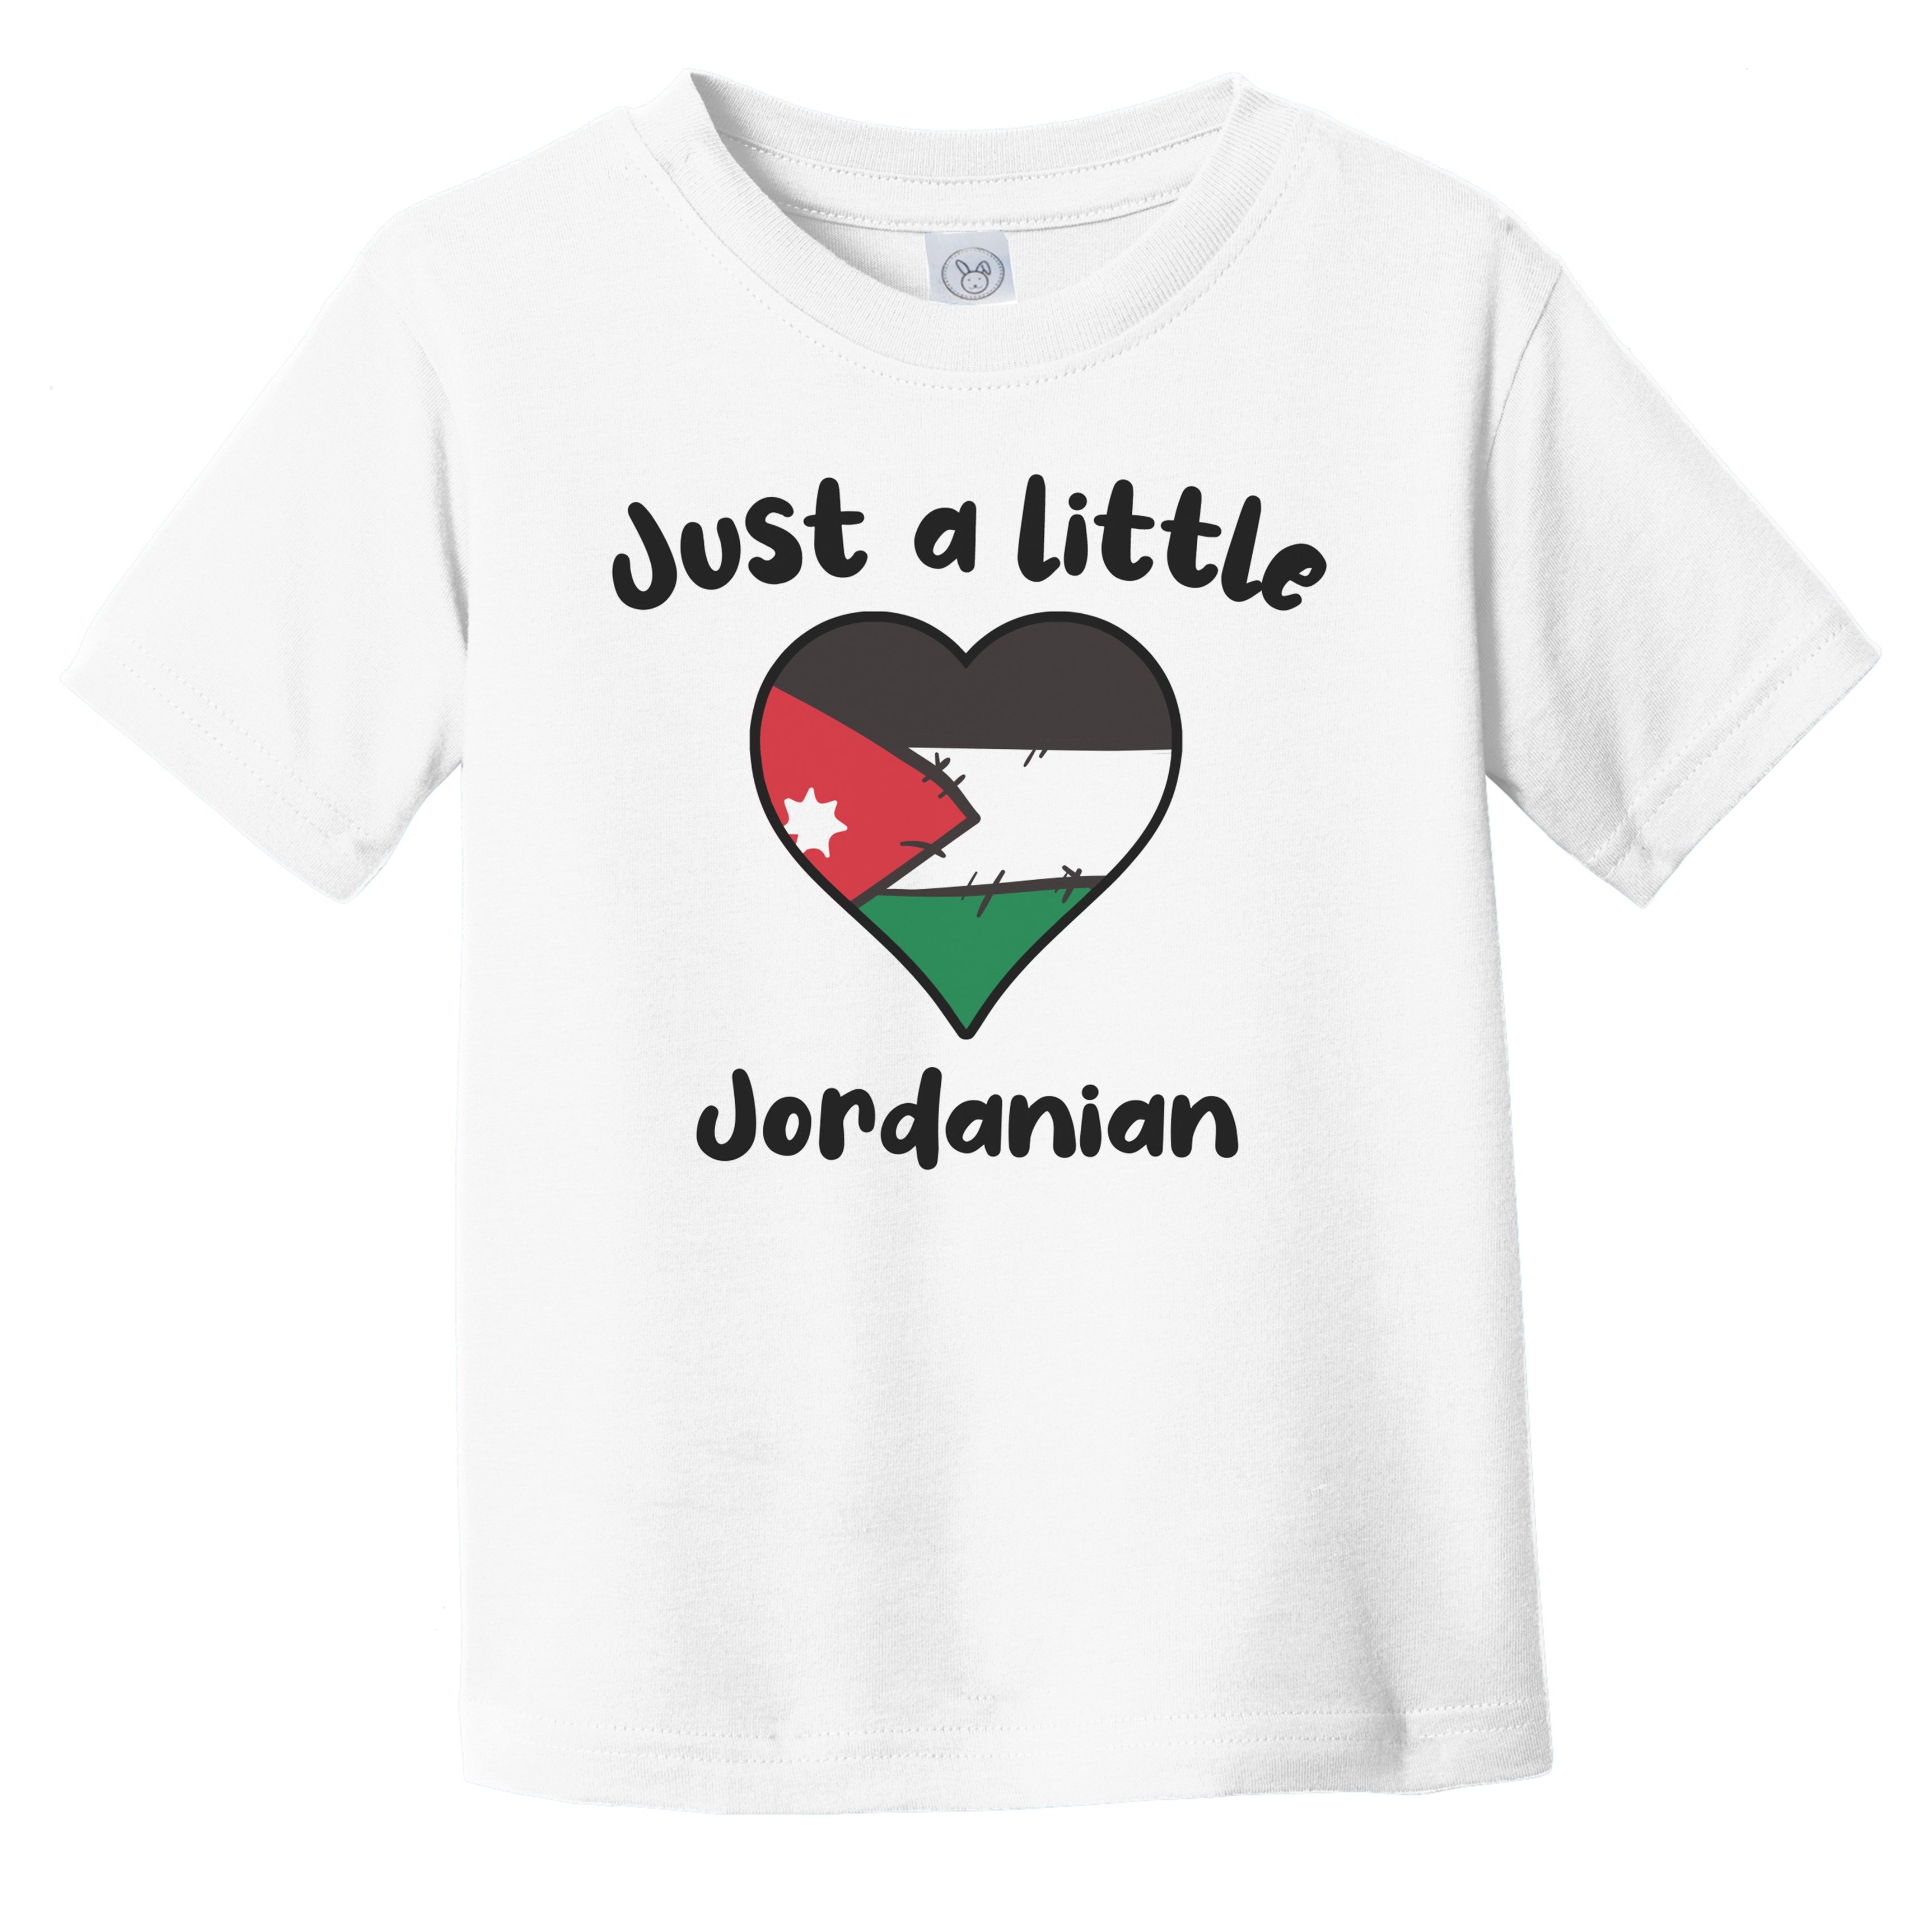 jordanian shirts